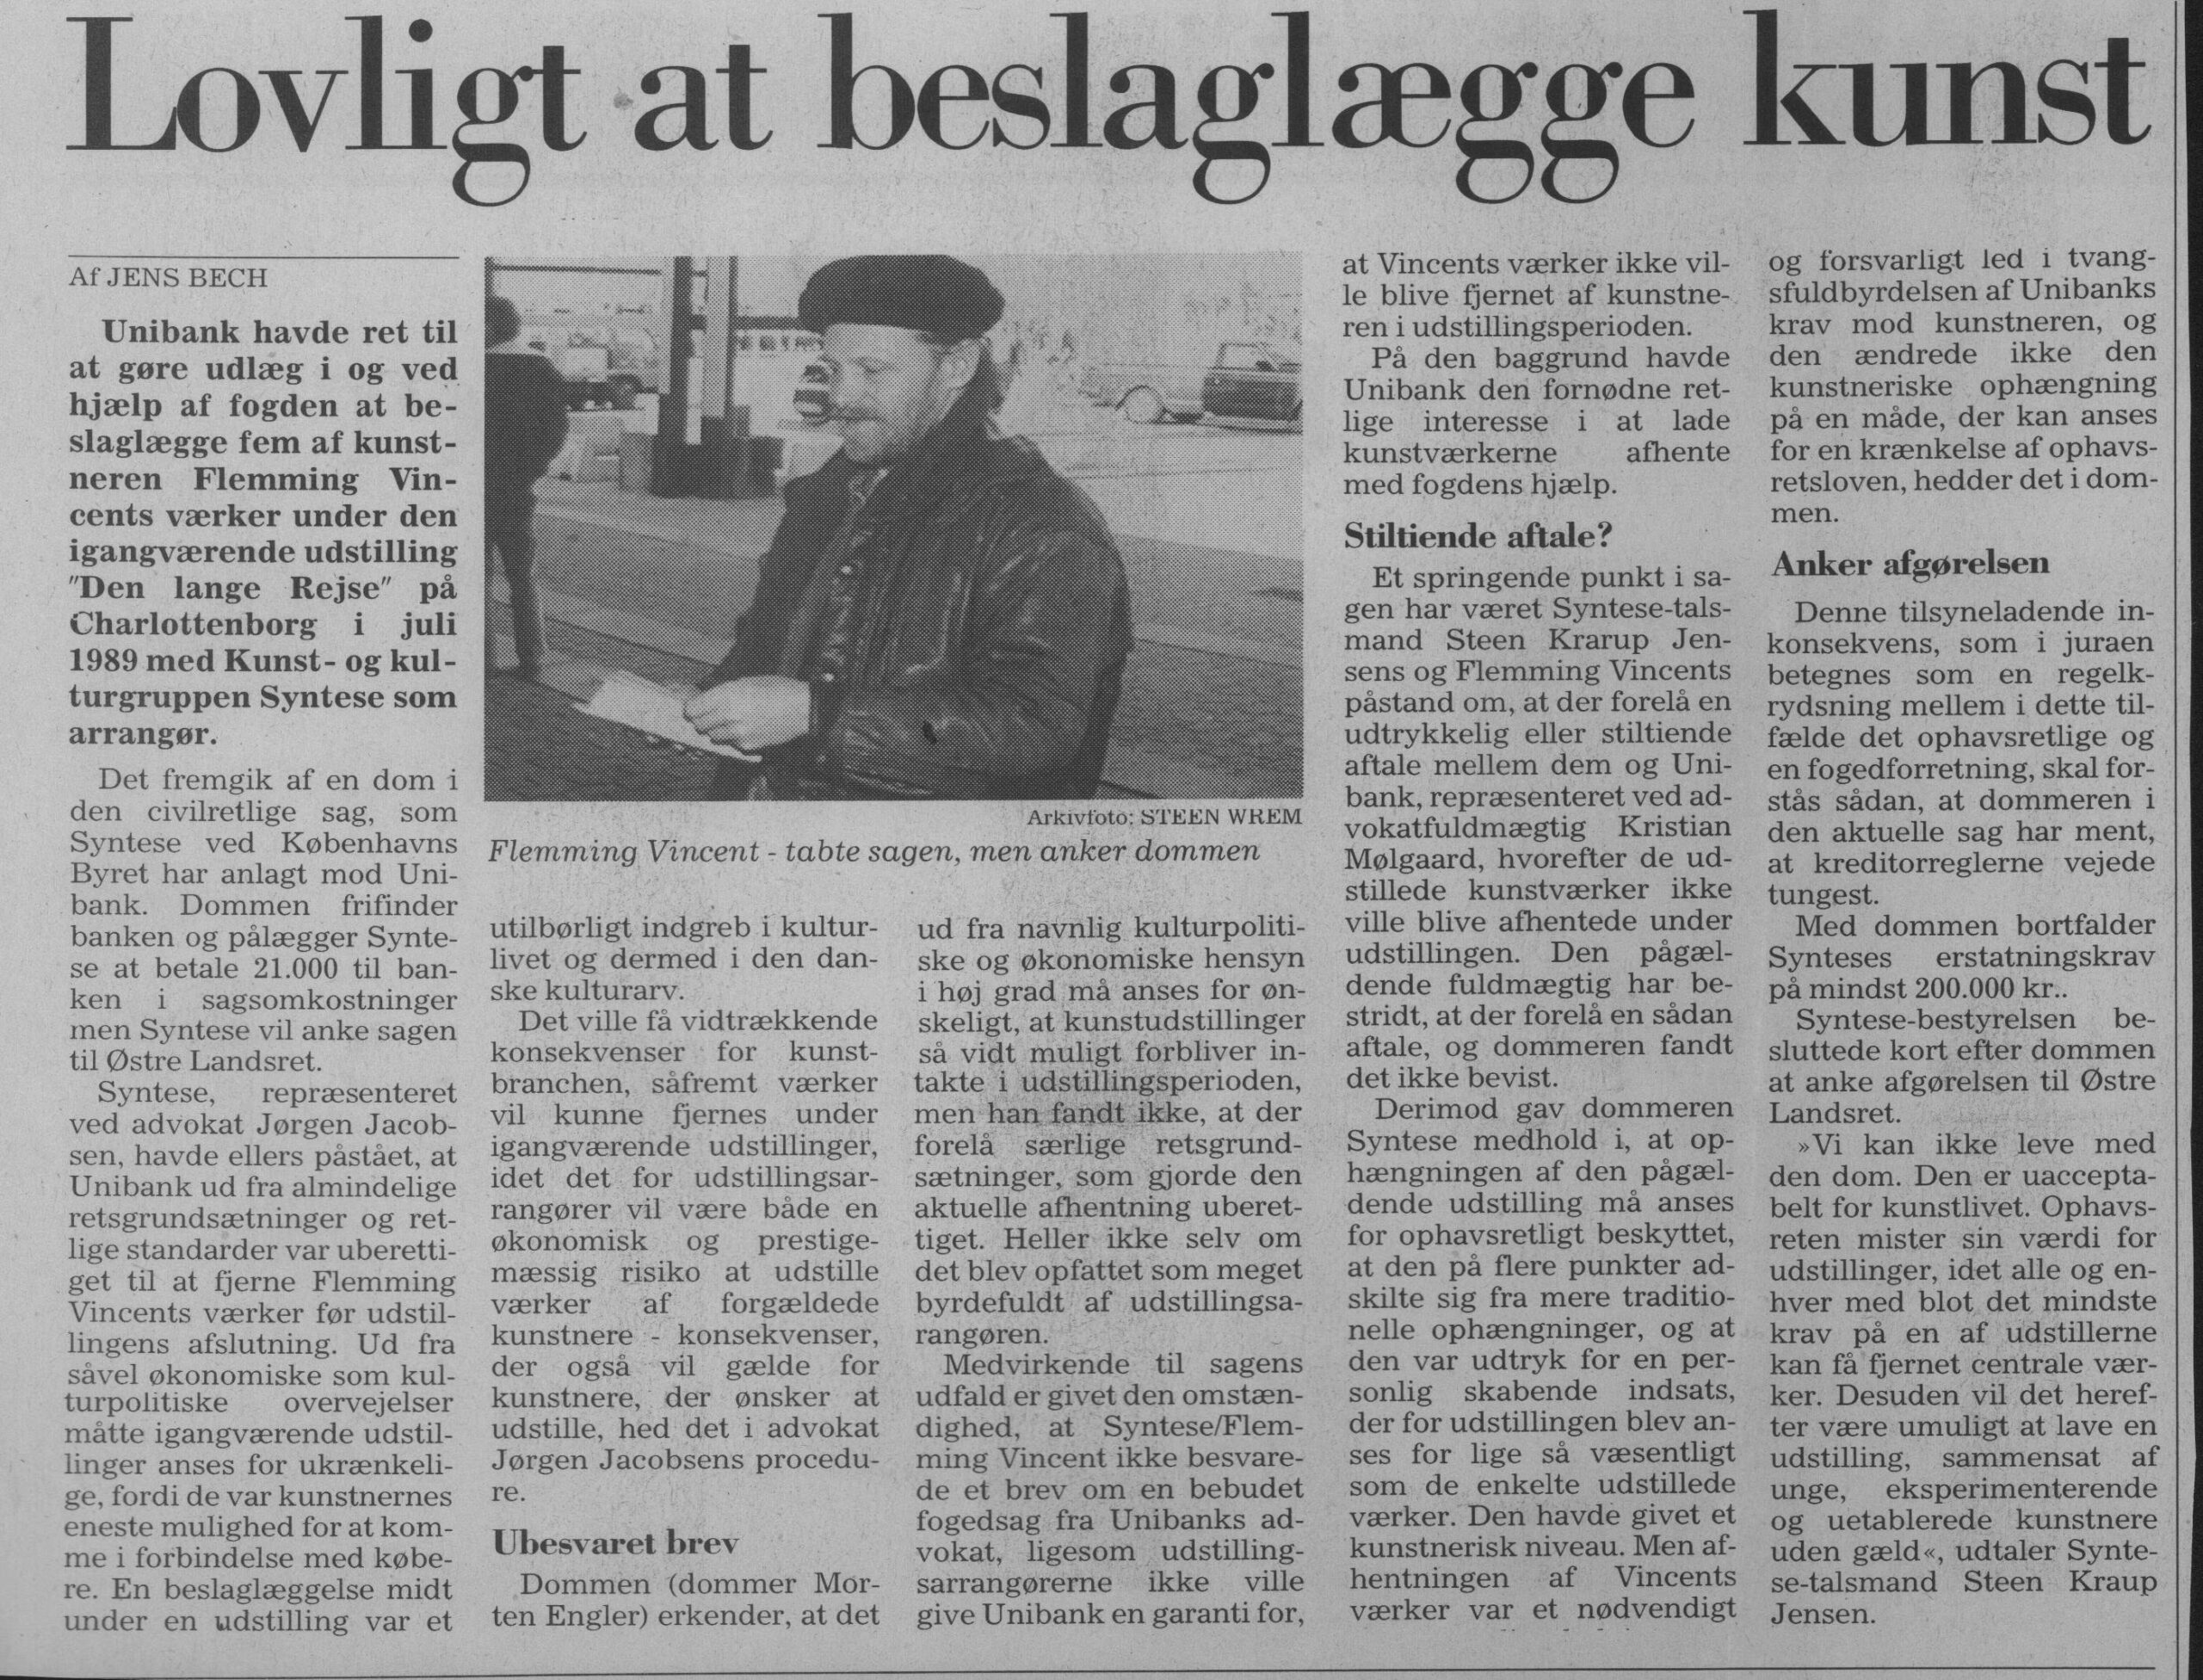 Lovligt at beslaglægge kunst. Omtale (Retssag. Den lange rejse, Charlottenborg, København 1989). Jens Bech. Jyllands-Posten.